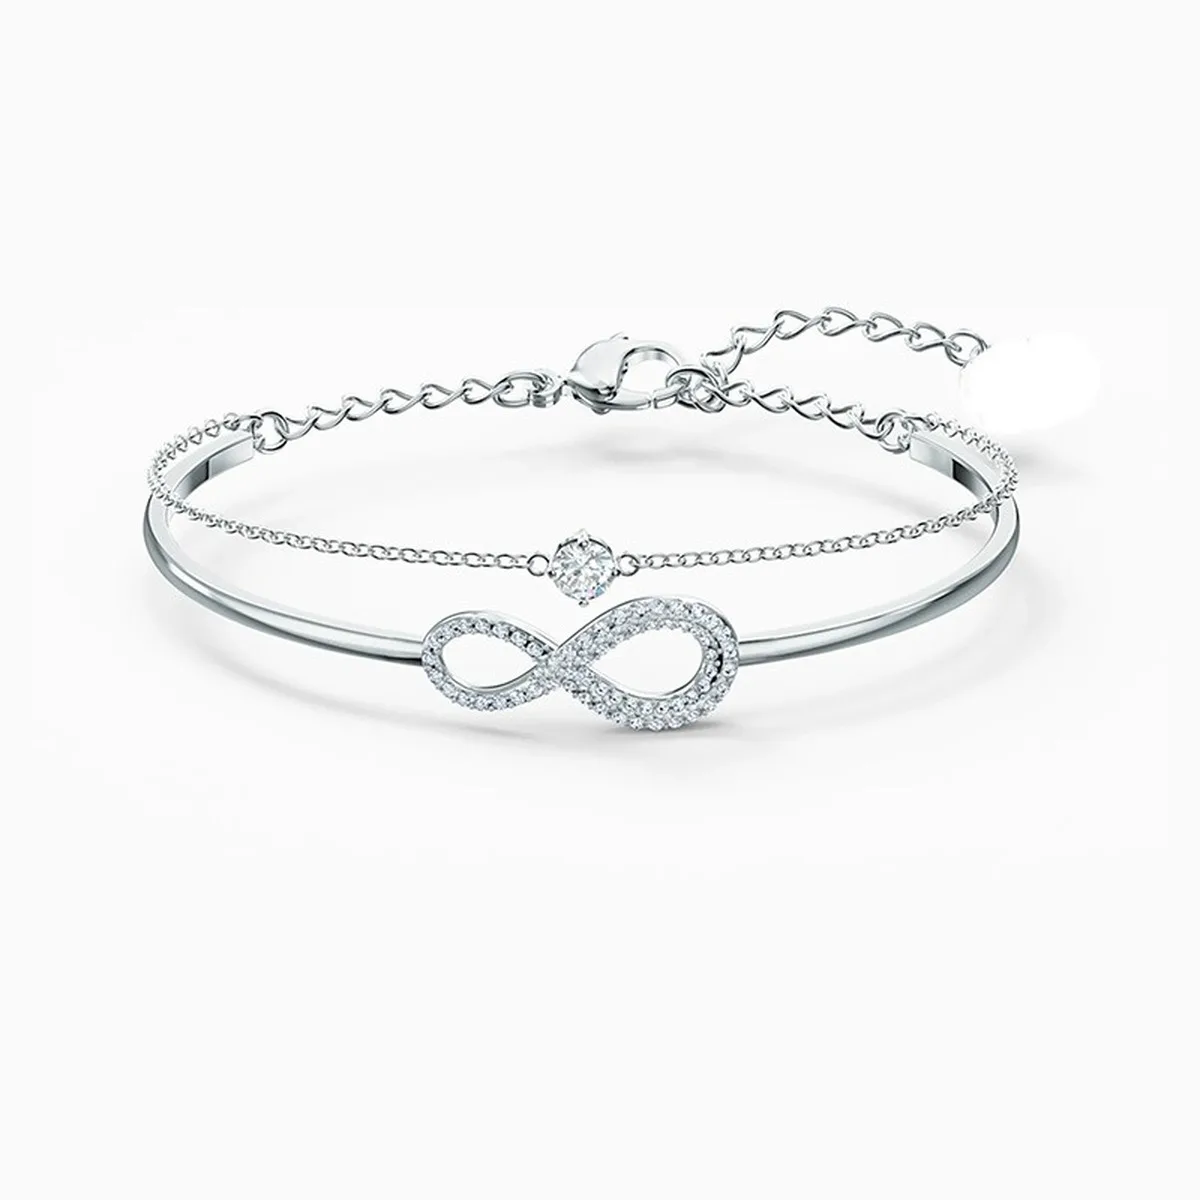 2020 moda biżuteria swa1: 1 w kształcie serca 8-w kształcie bransoletka nadaje się dla kobiet dziewczyn urocze prezenty ślubne